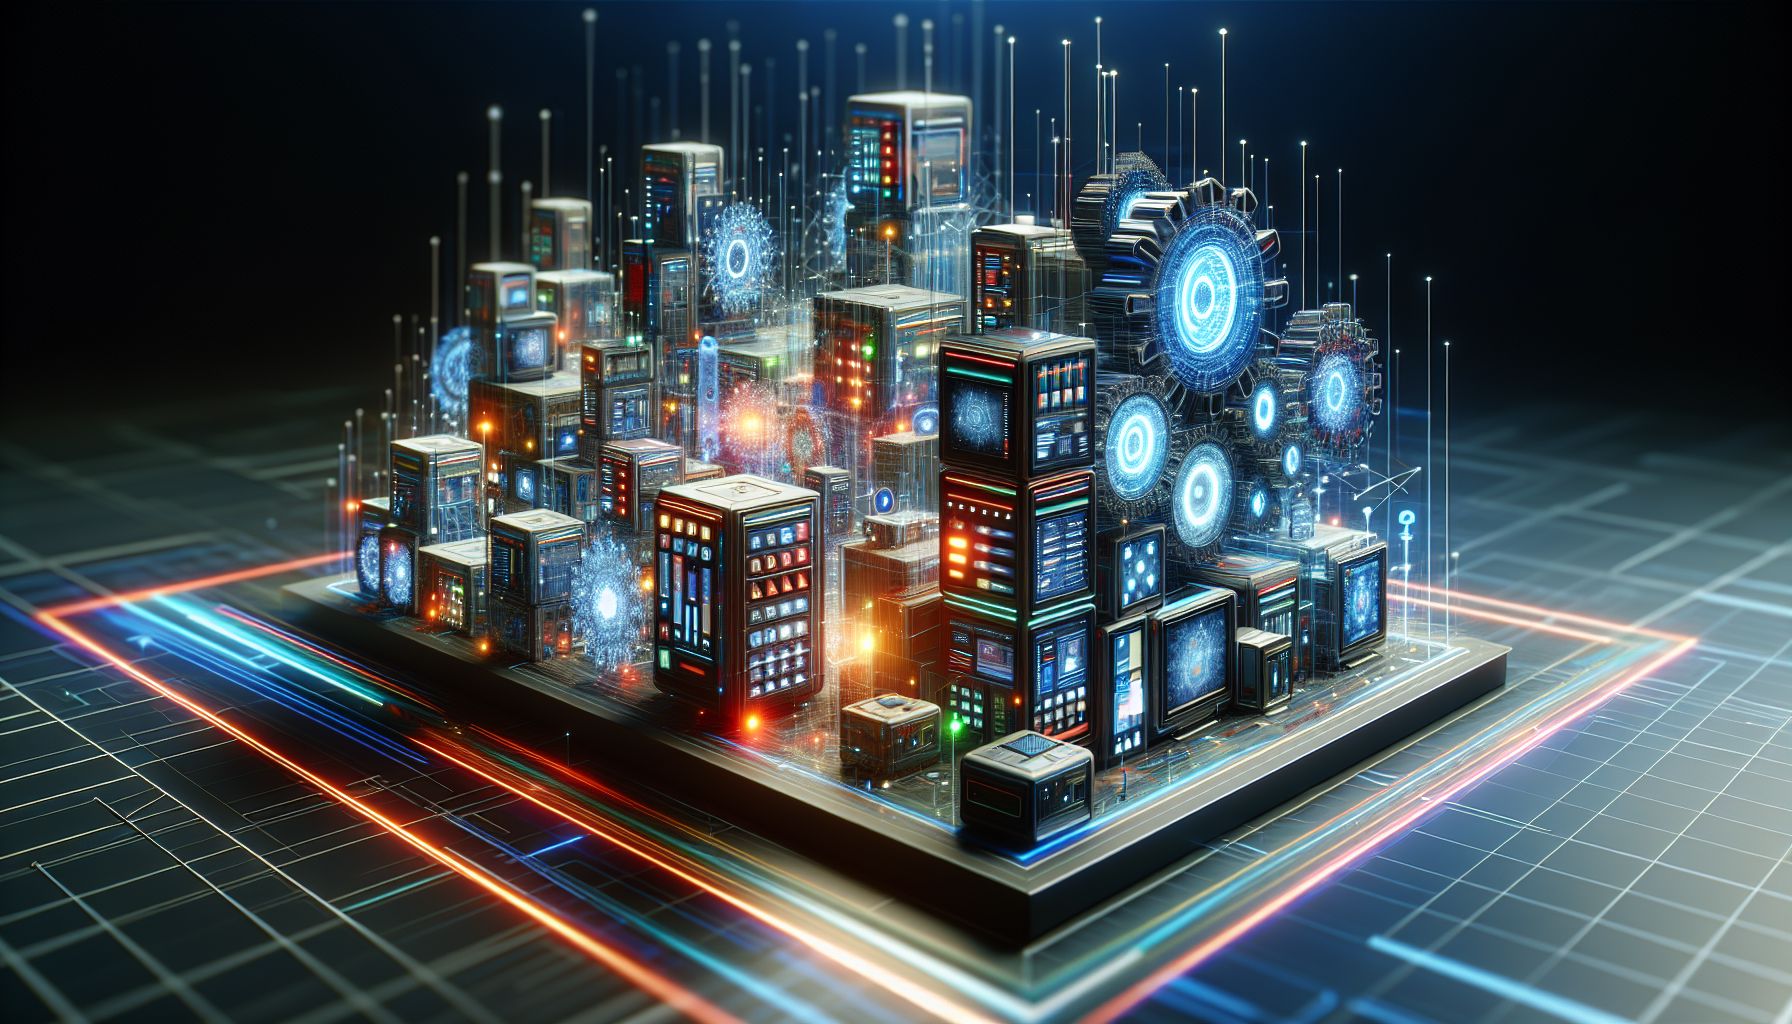 Verkkokauppa ja elektroniikka: Teknologian kehittyessä onko verkkokauppa tulevaisuuden tapa ostaa elektroniikkaa?